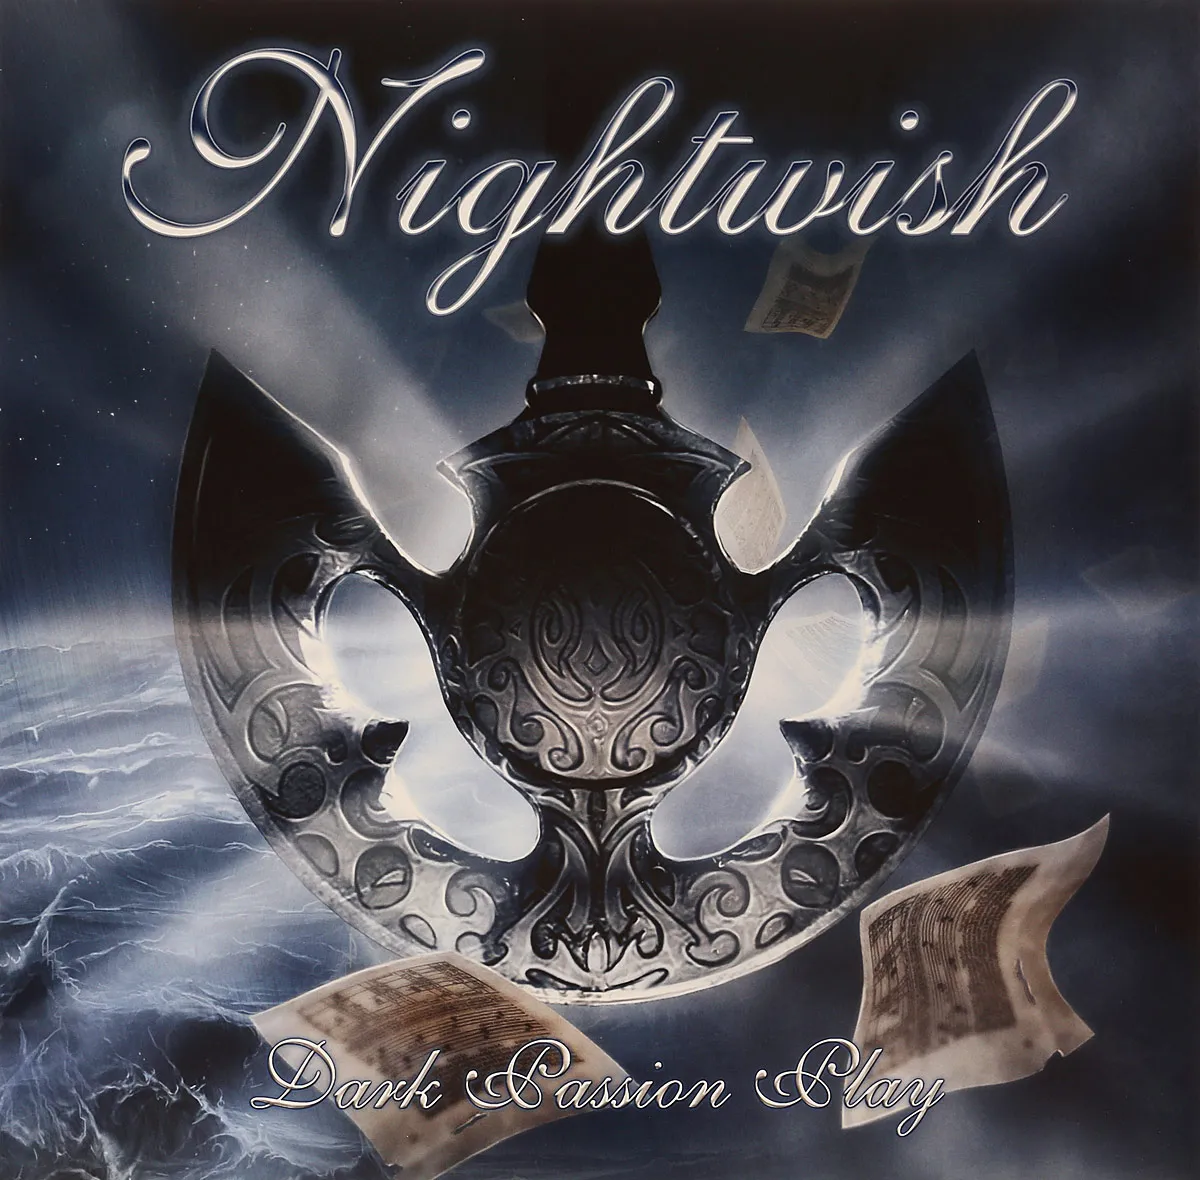 Металл Nuclear Blast Nightwish - Dark Passion Play (180 Gram Black Vinyl 2LP) матрёшка православная 3 кукольная спас владимирская николай чудотворец